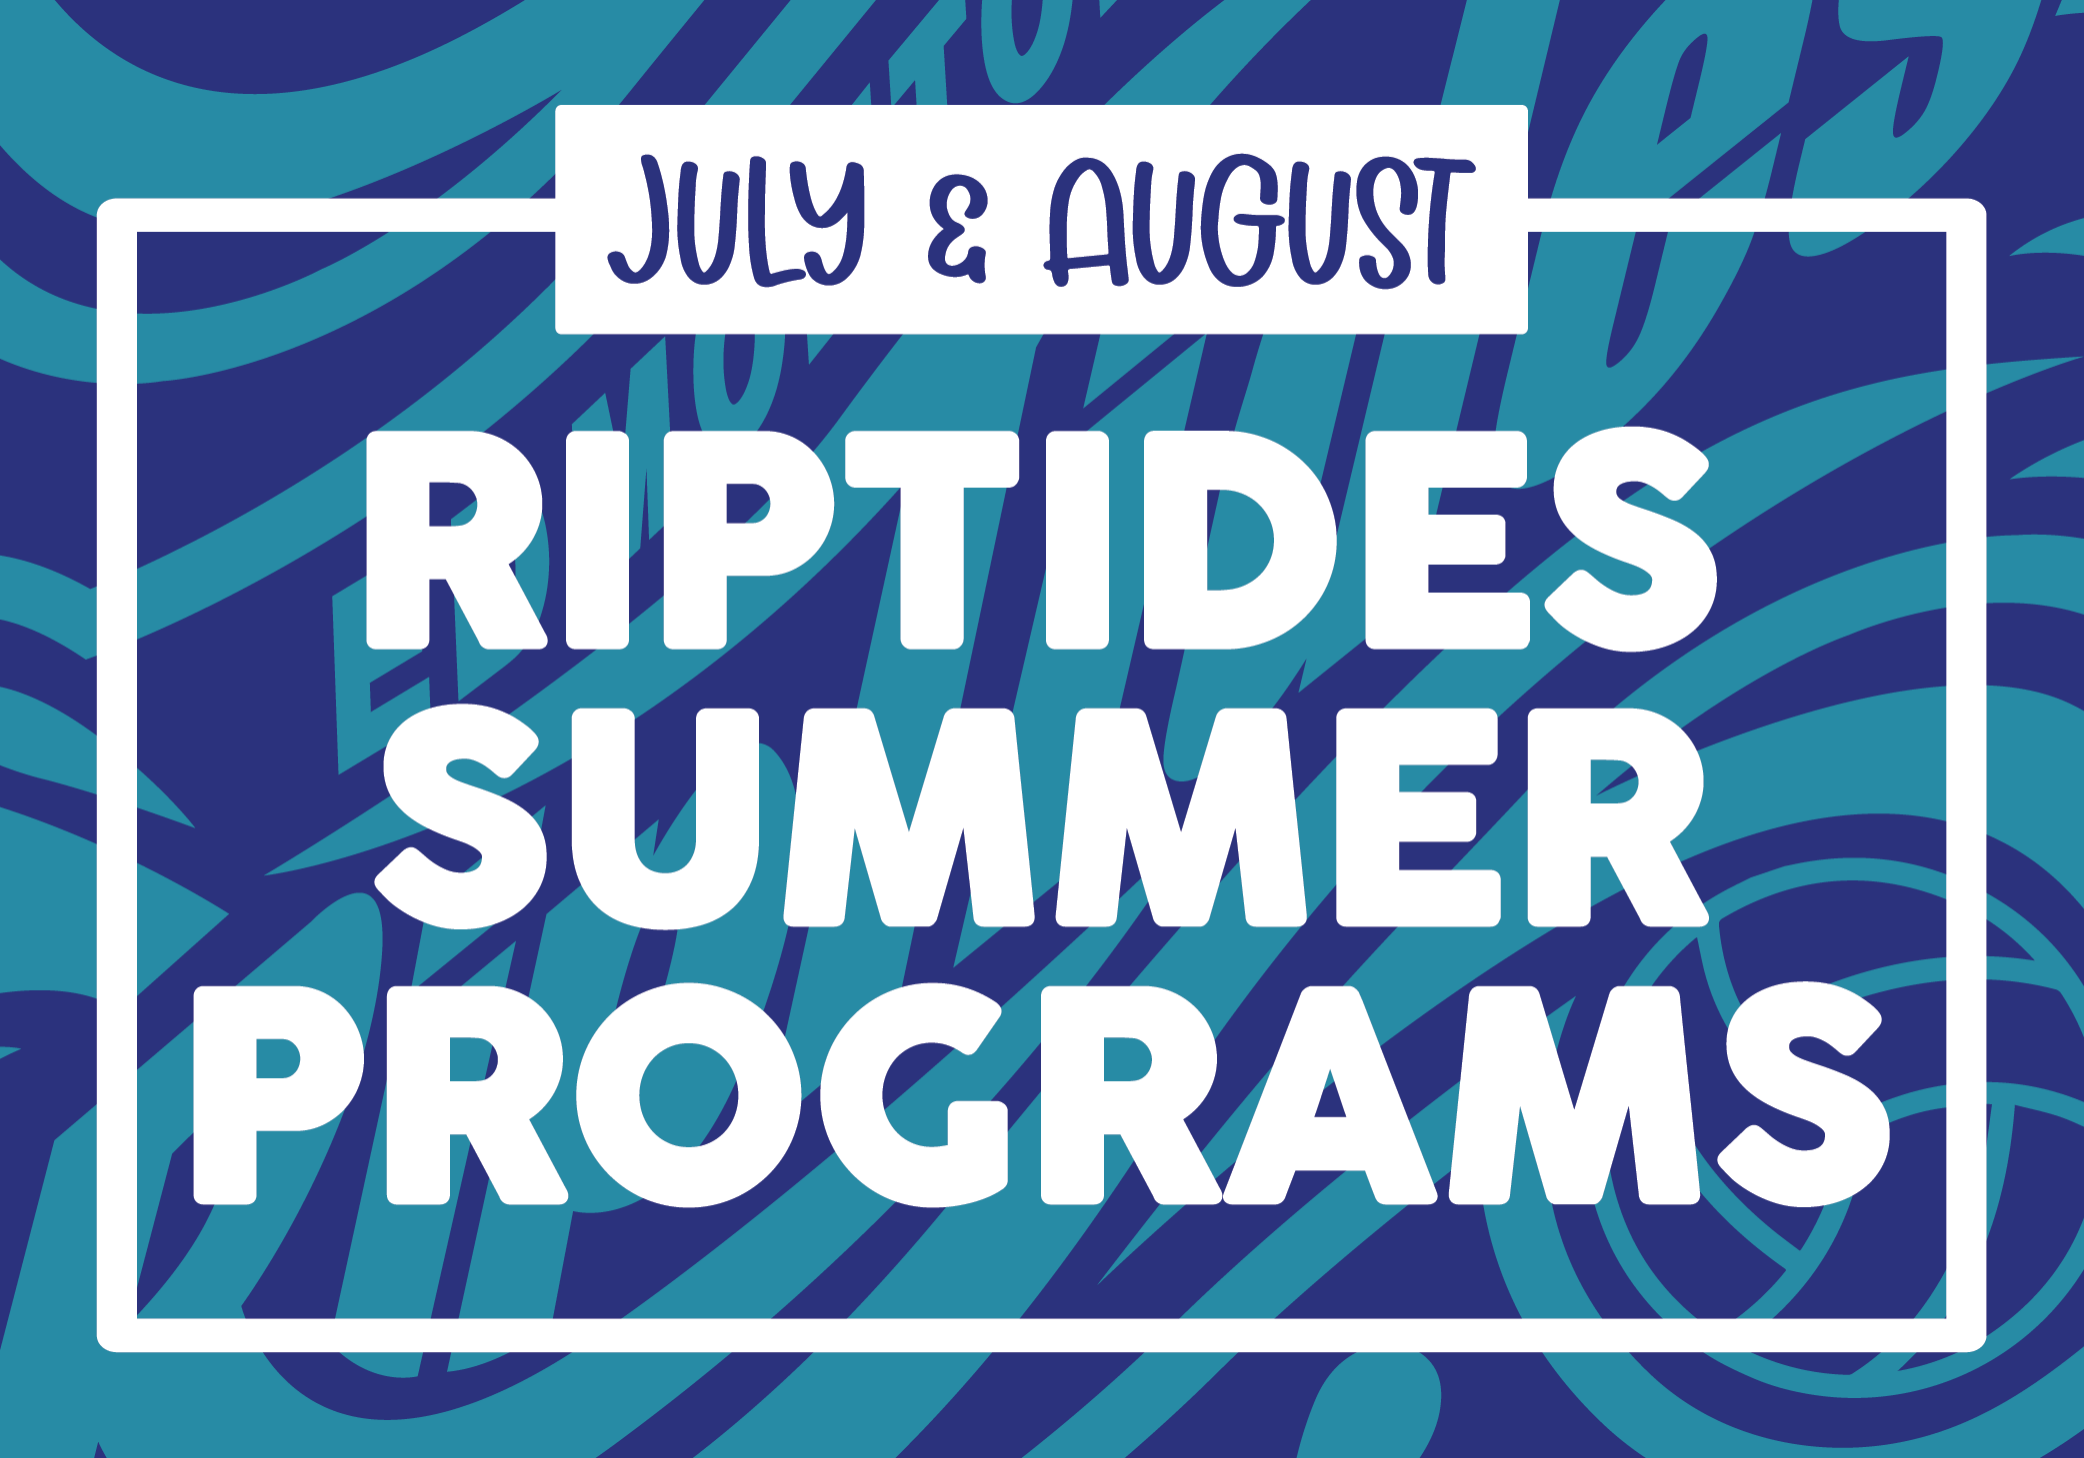 Riptides 2021 Summer Programs-01